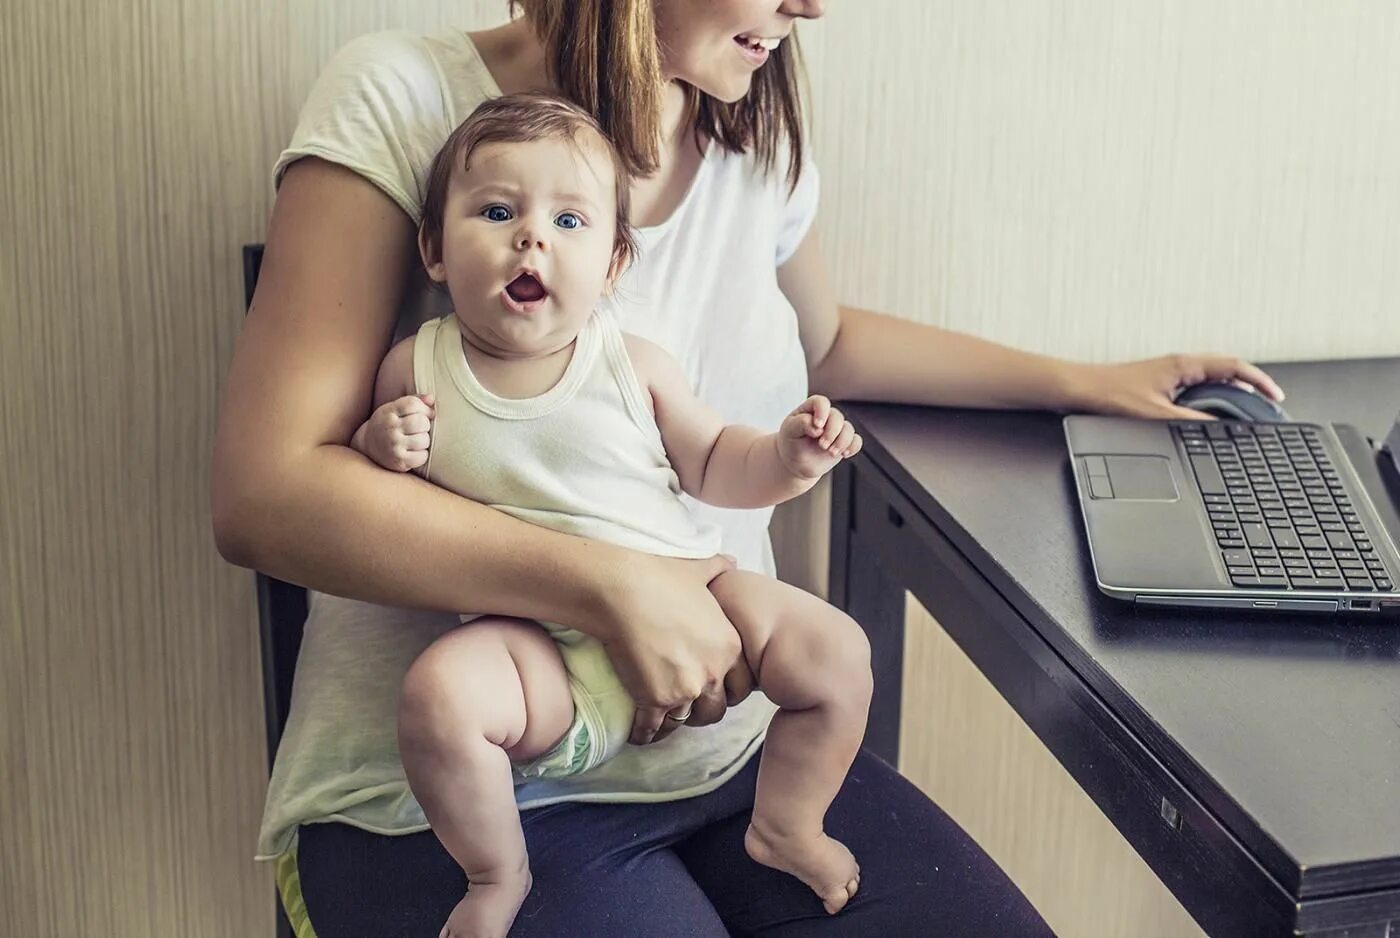 Мама в декрете. Мама с ребенком за компьютером. Женщина с ребенком за компьютером. Мамочка с ребенком у компьютера. Мама без интернета